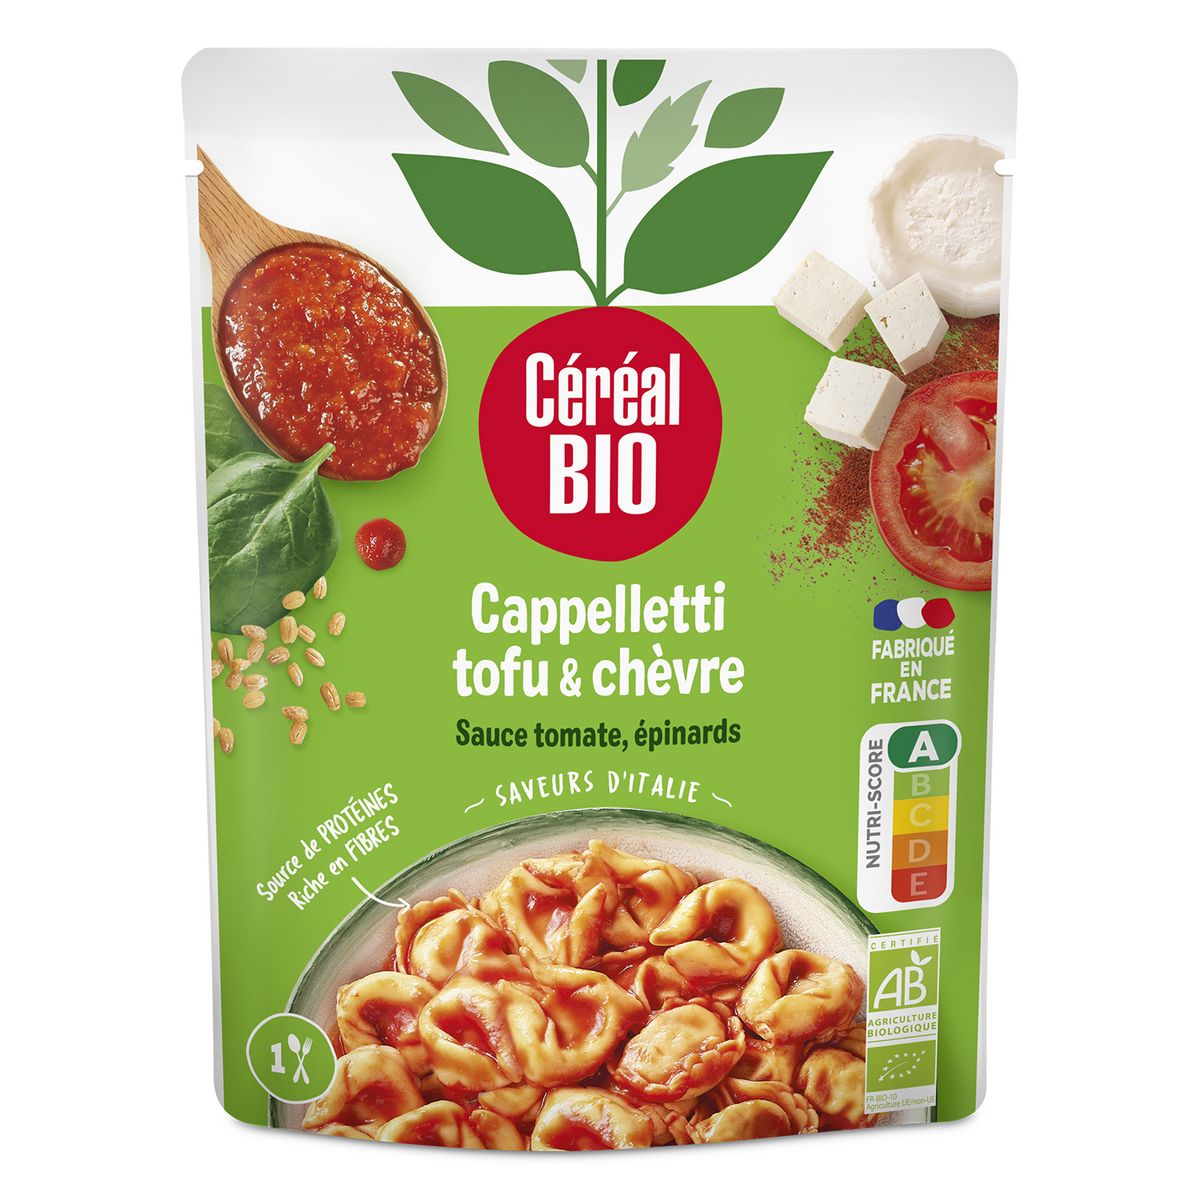 CÉRÉAL BIO Cappelletti tofu épinards chèvre sauce tomate sachet express 1 personne 220g